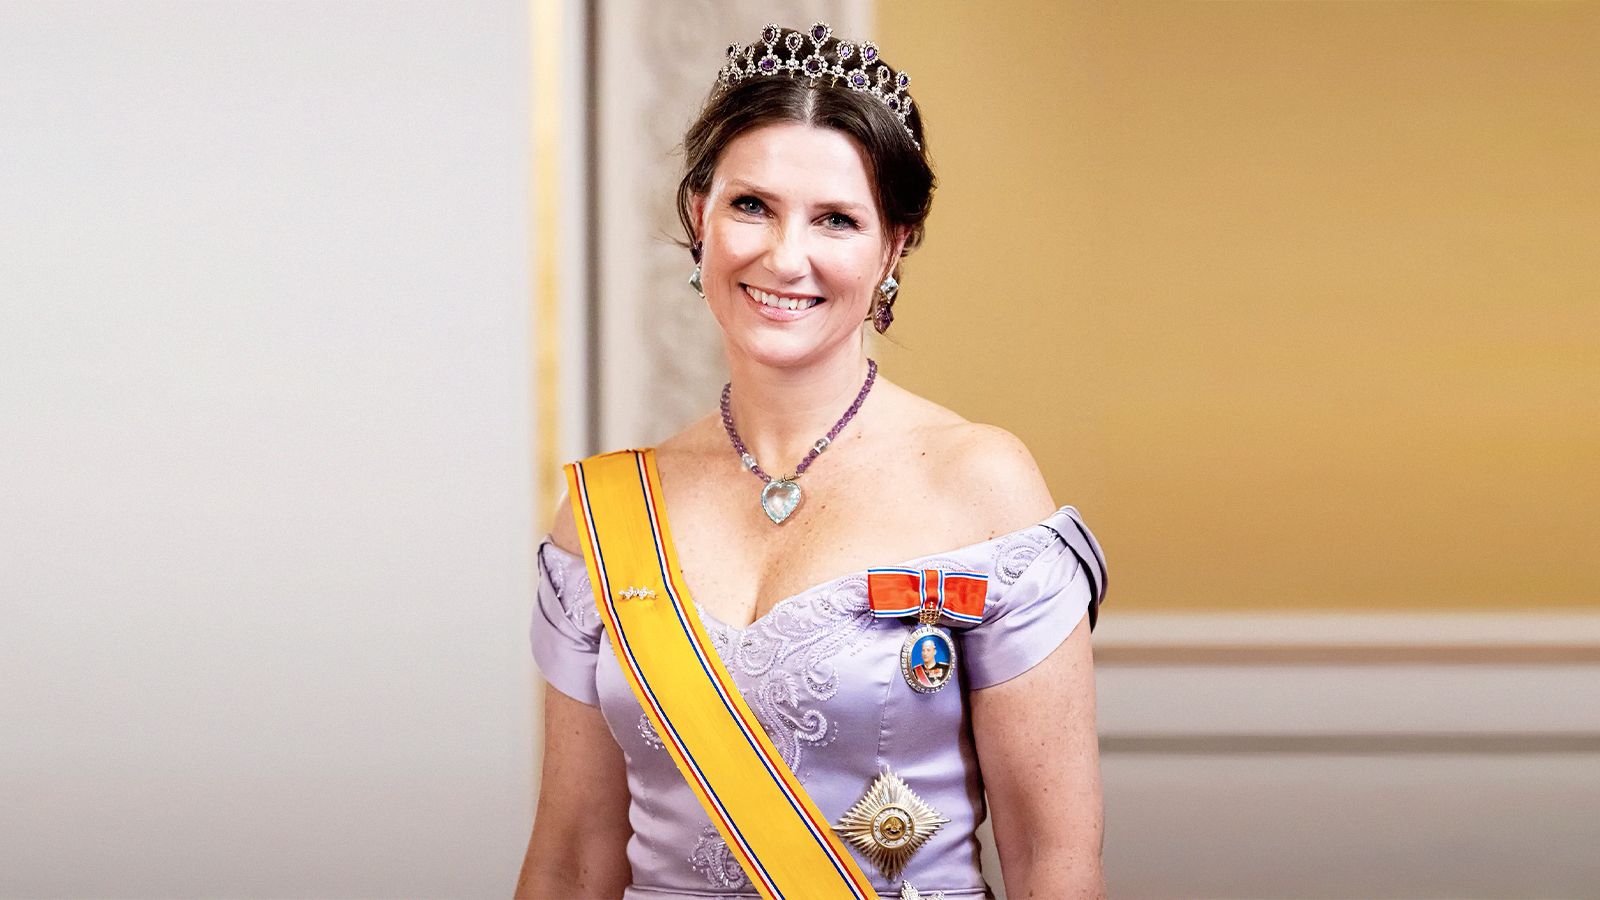 Royal news: принцесса Норвегии Марта-Луиза отказалась от титула и представления королевского дома Глюксбургов